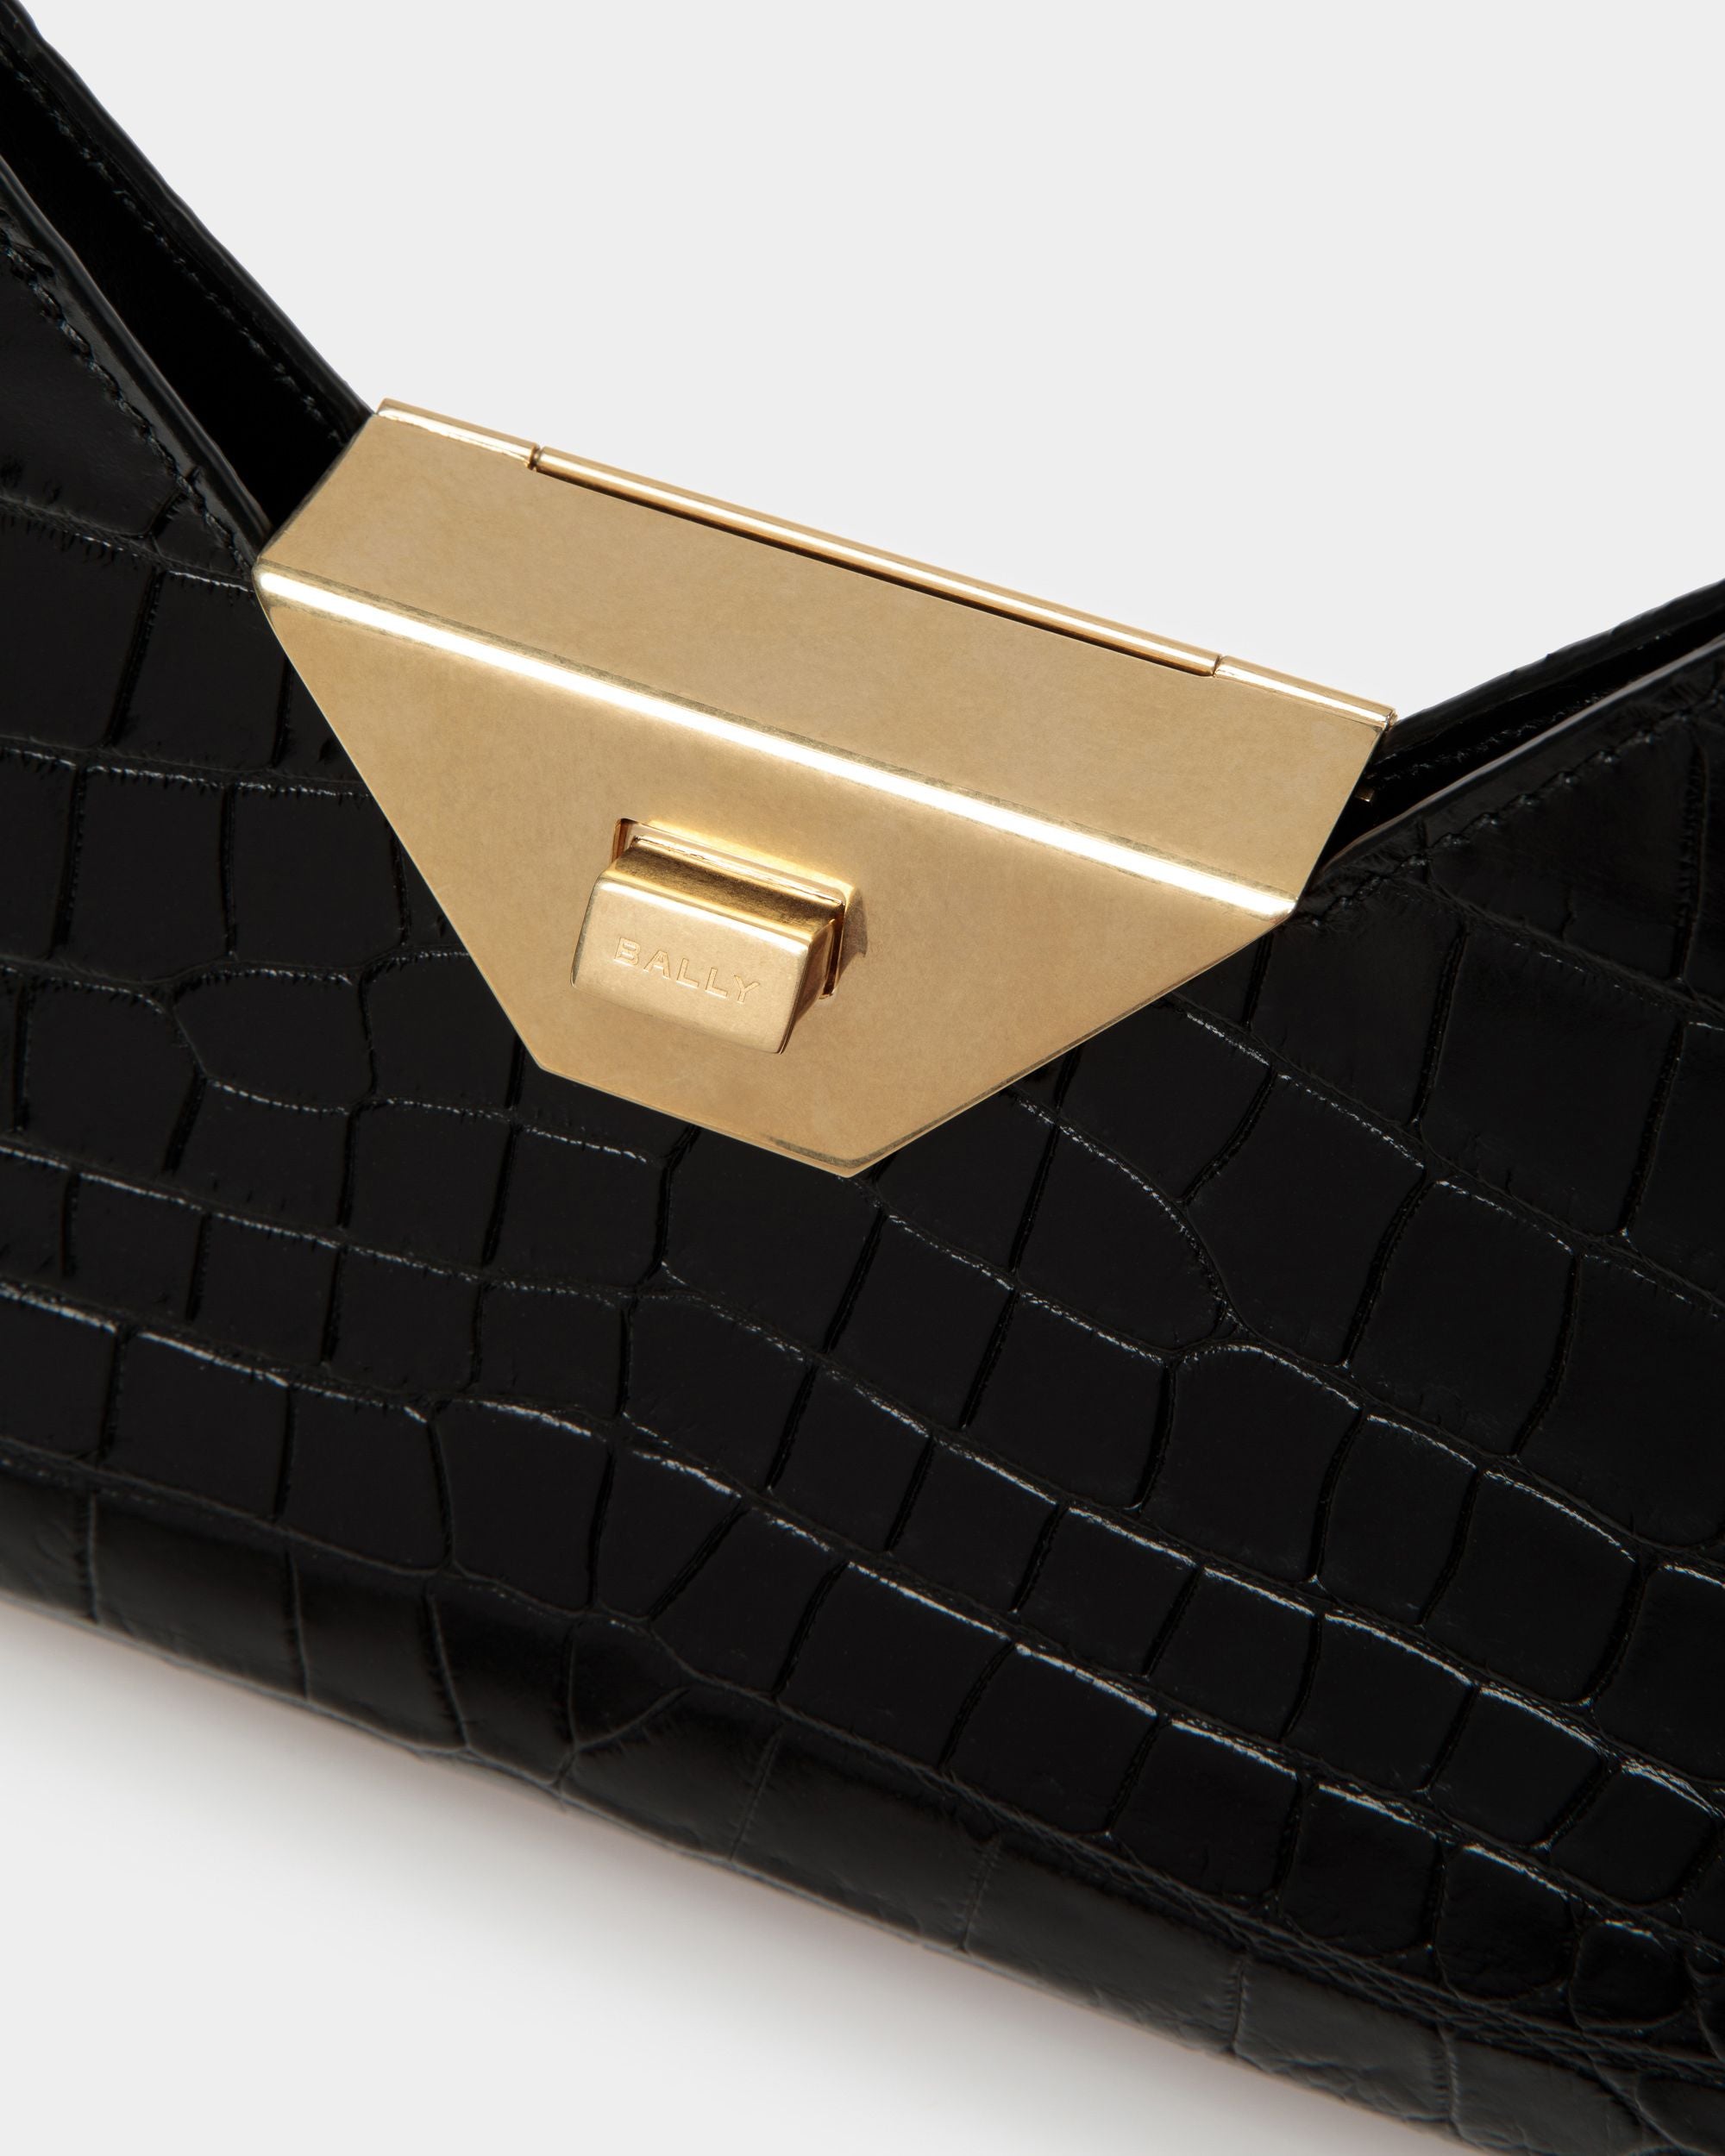 Trilliant Small Shoulder Bag | Women's Shoulder Bag | Black Leather | Bally | Still Life Detail